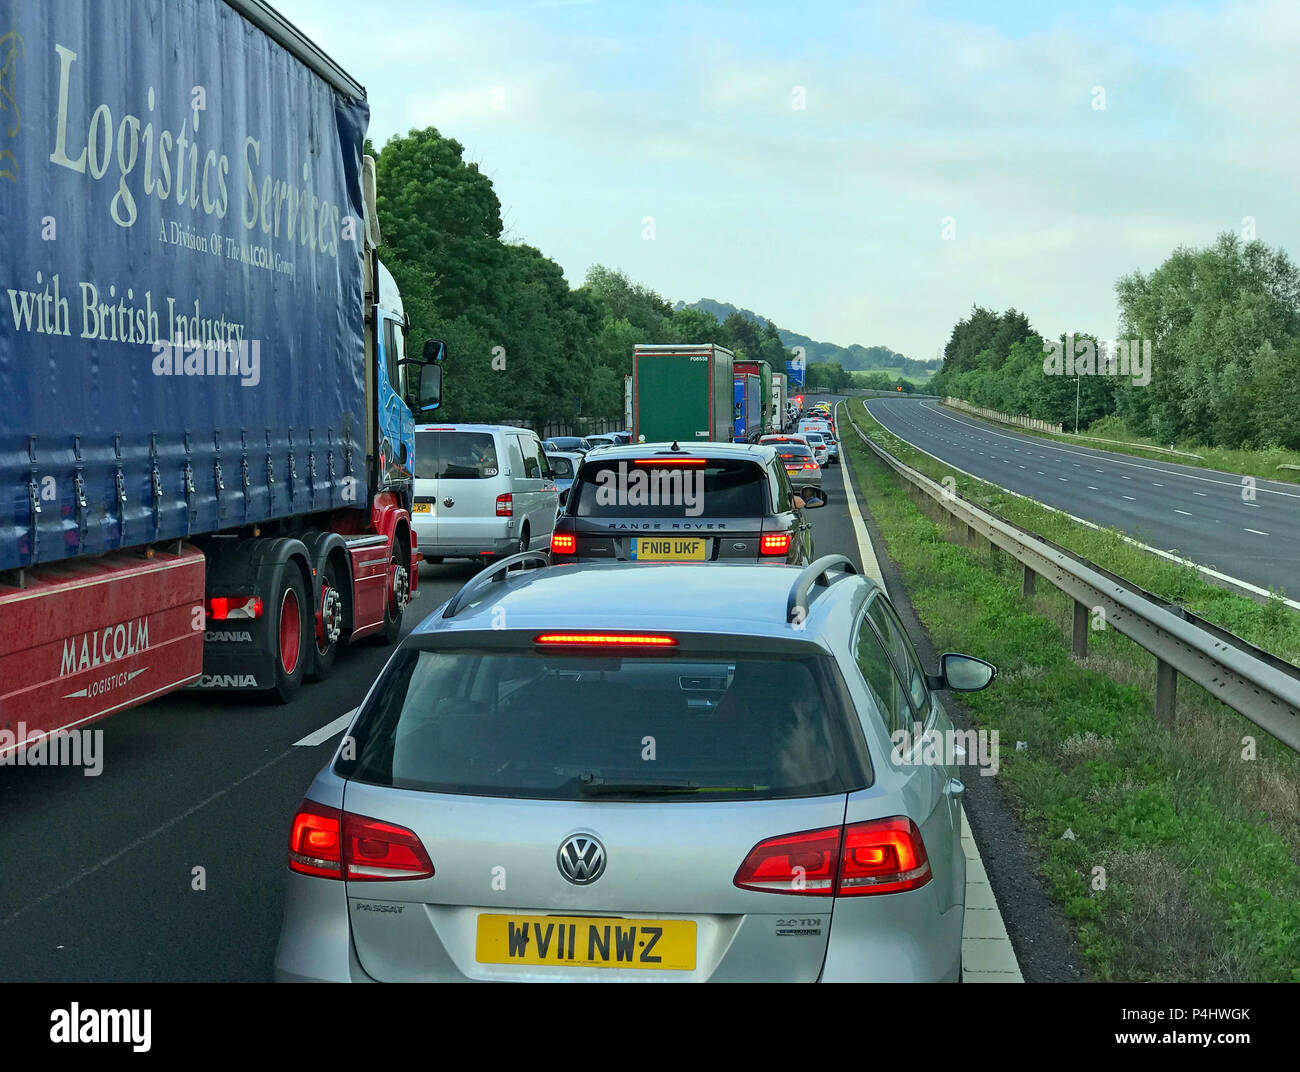 M5 Stau, mit leerer gegenüberliegender Autobahn, Verspätungen auf der Autobahn, England, UK-Straßennetz Stockfoto